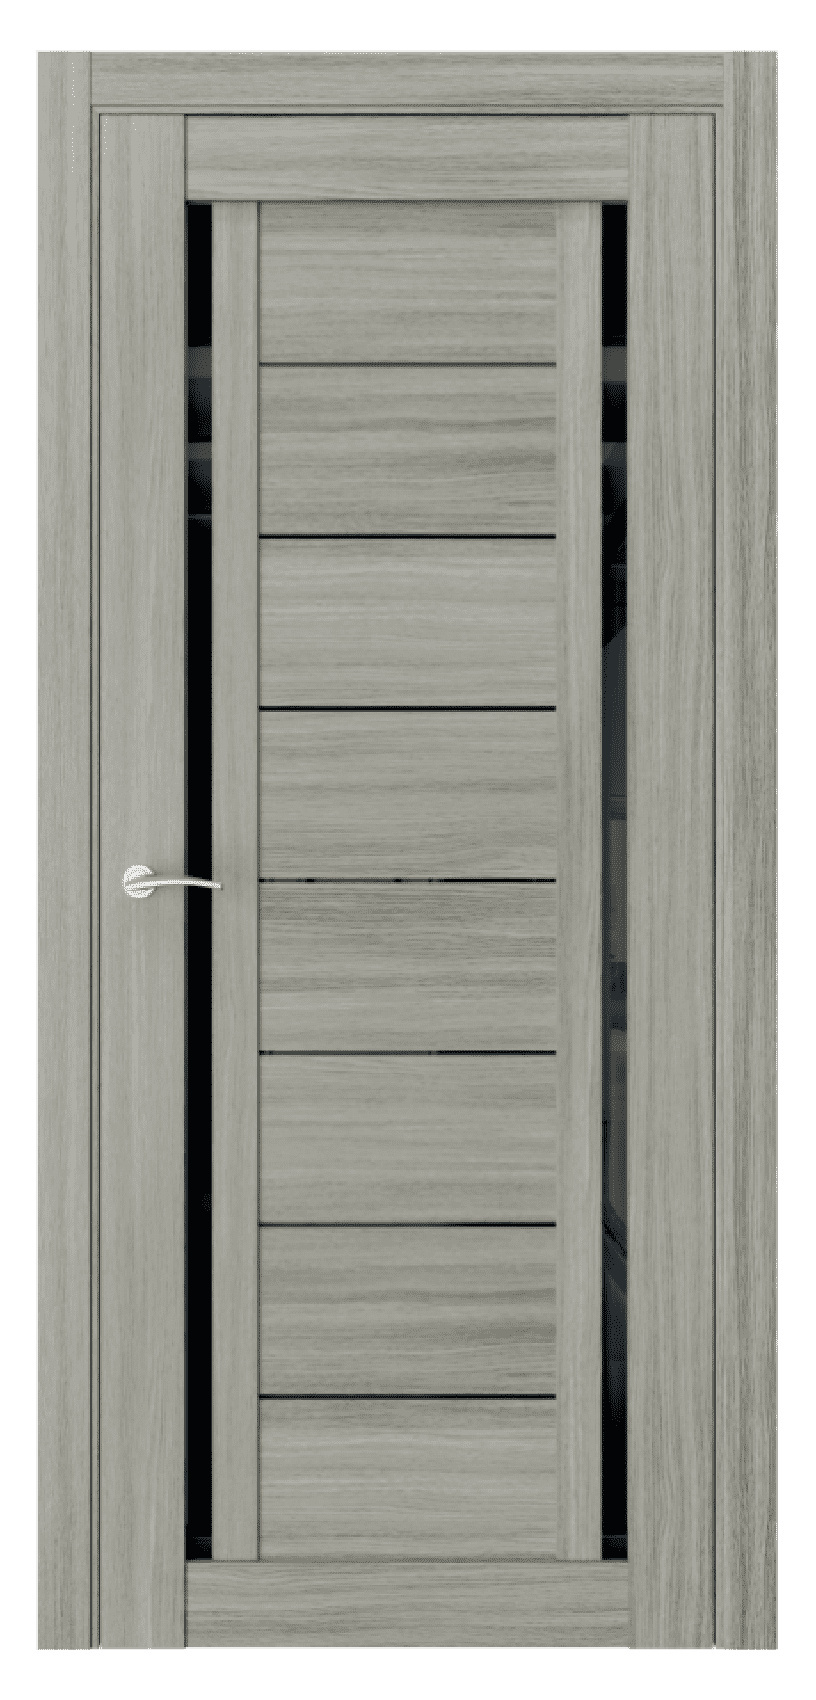 Questdoors Межкомнатная дверь Q33, арт. 17471 - фото №1